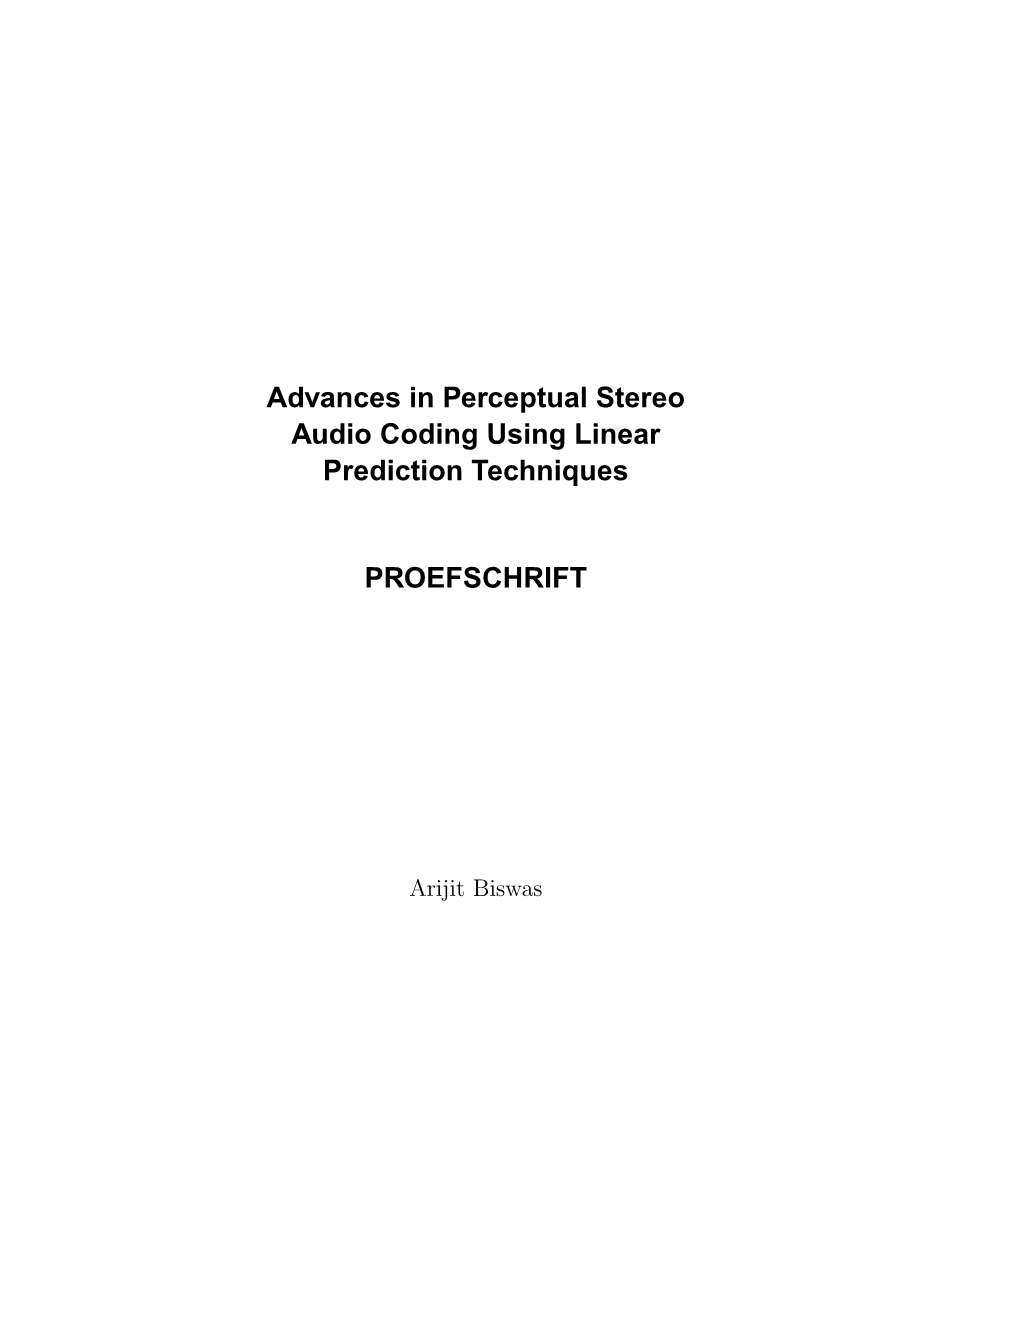 Advances in Perceptual Stereo Audio Coding Using Linear Prediction Techniques